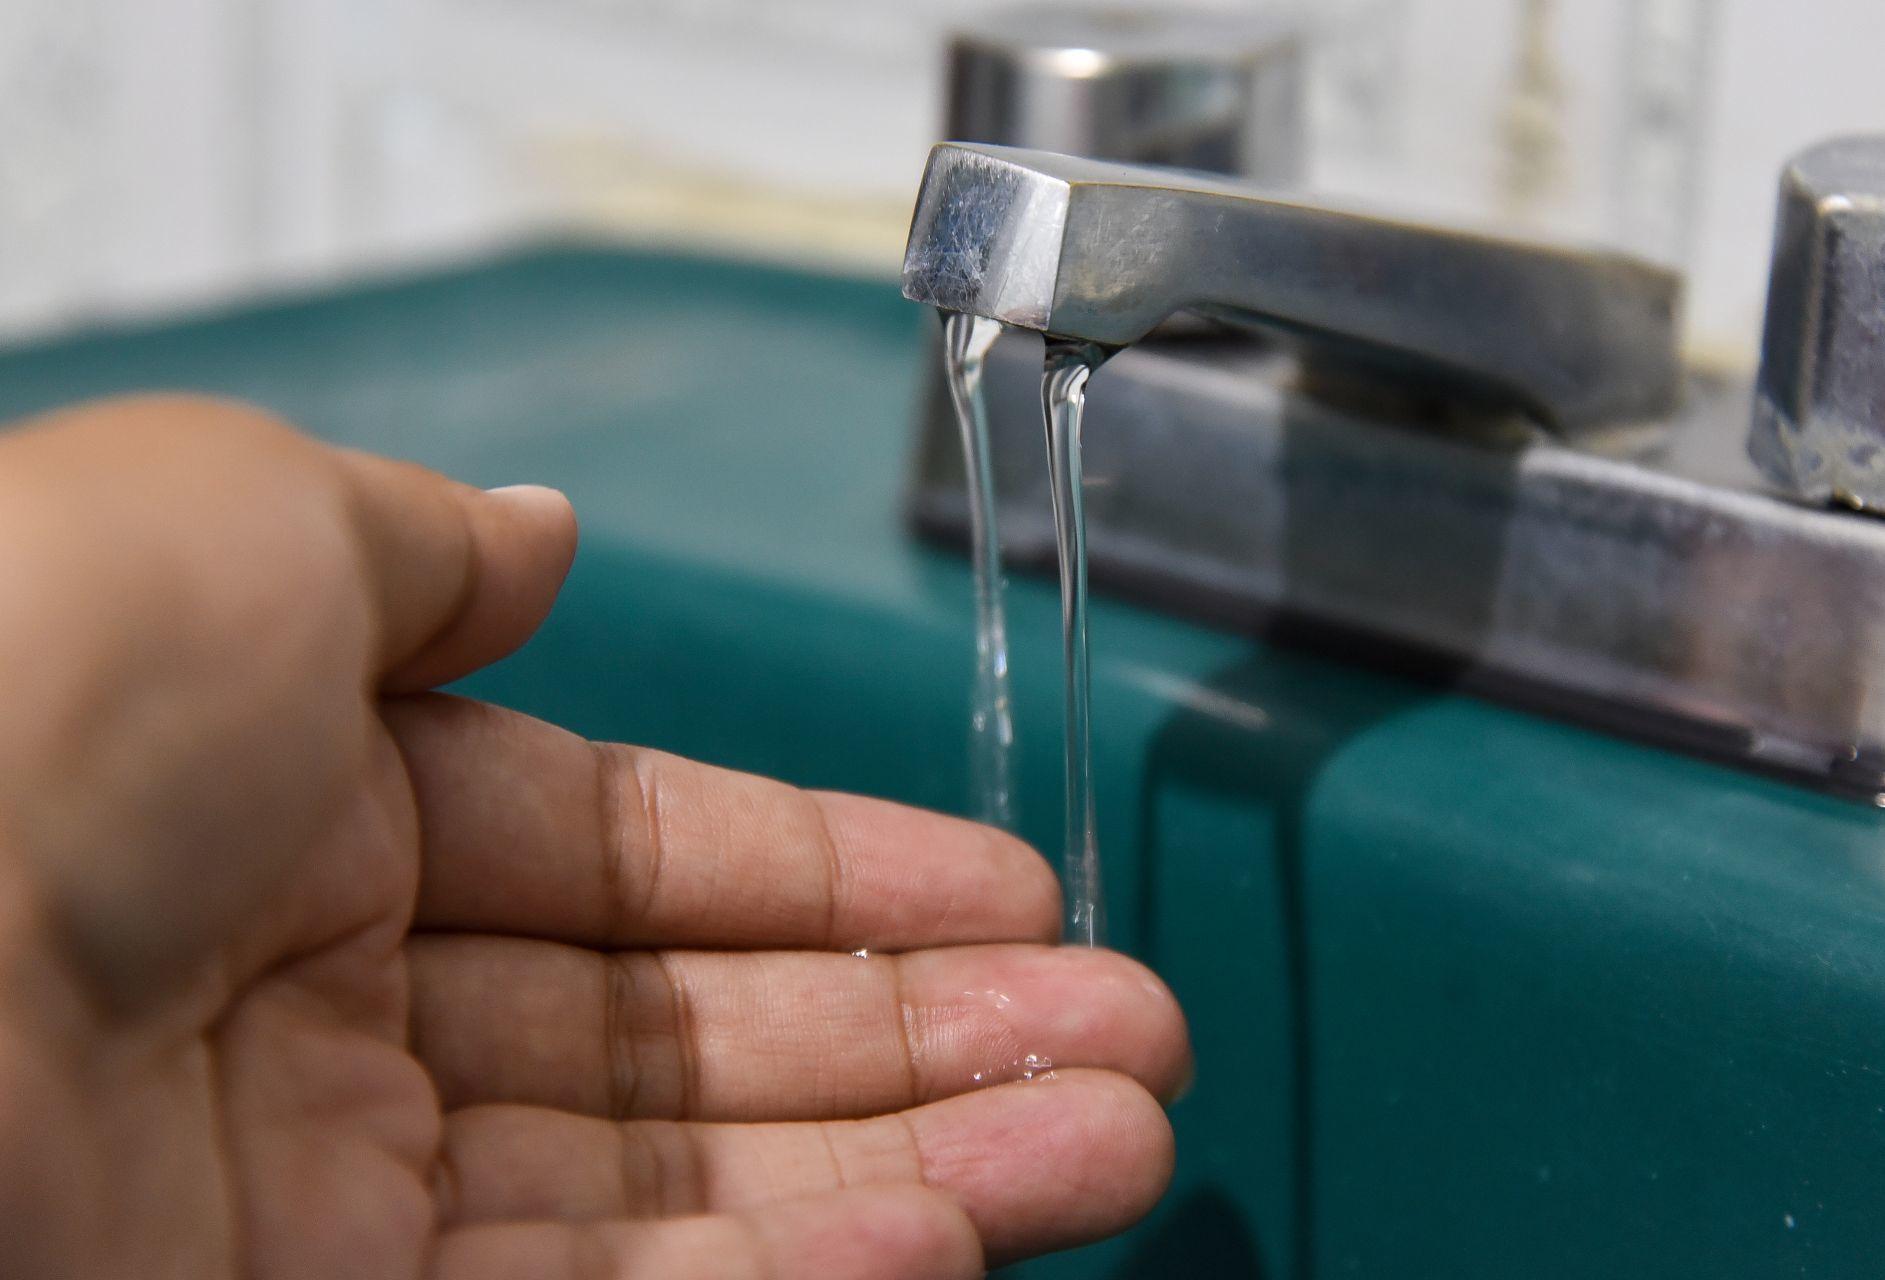 Cutzamala detendrá operación por falla; suministro de agua se reducirá